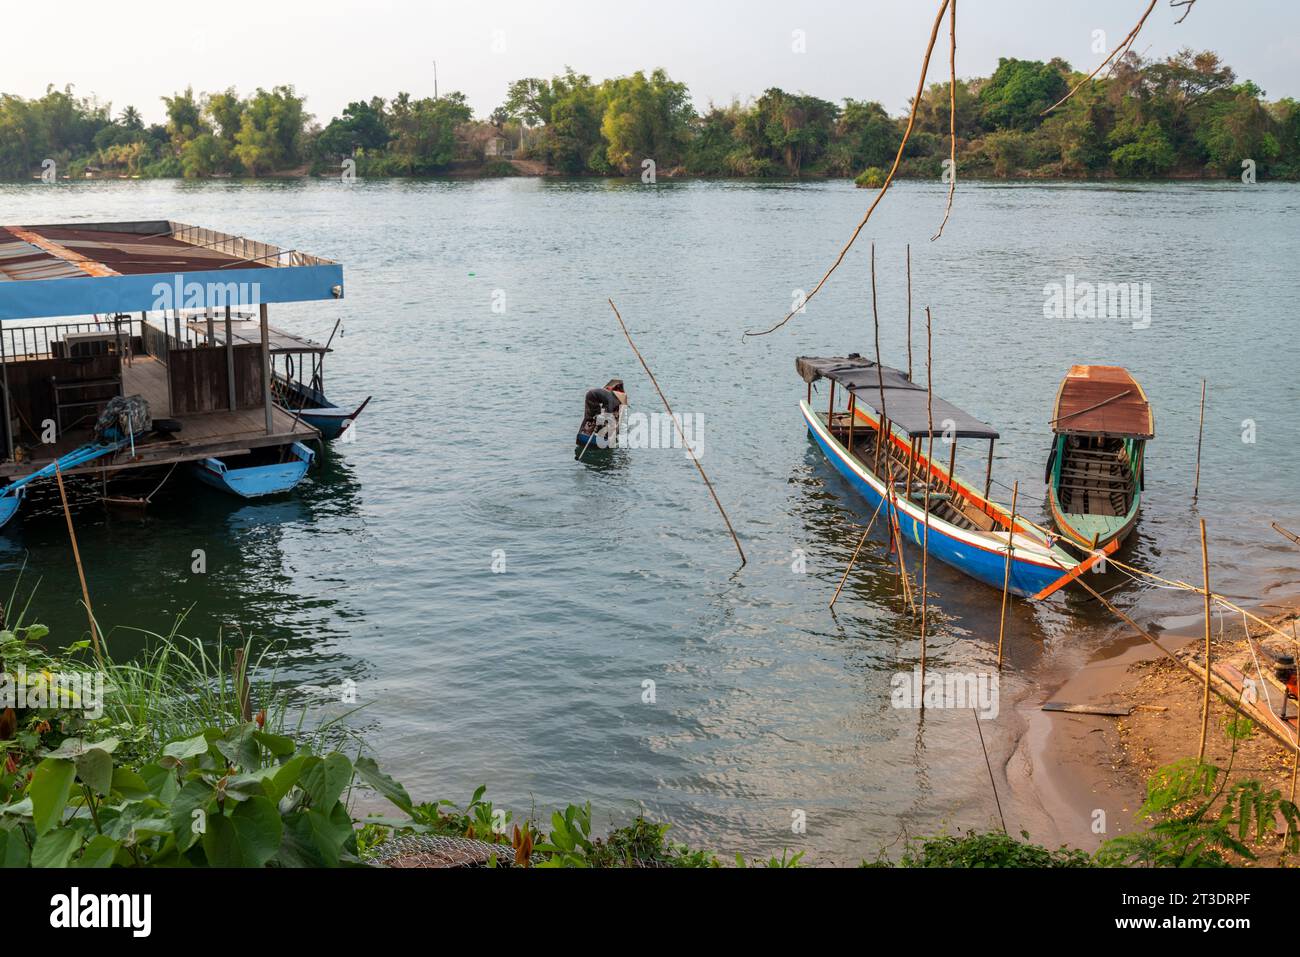 Piccola piattaforma galleggiante per traghetti, sul fiume Mekong, piccole barche in legno trasportano persone da e per le isole Nakasong e Don Som, presso il molo della spiaggia sabbiosa Foto Stock